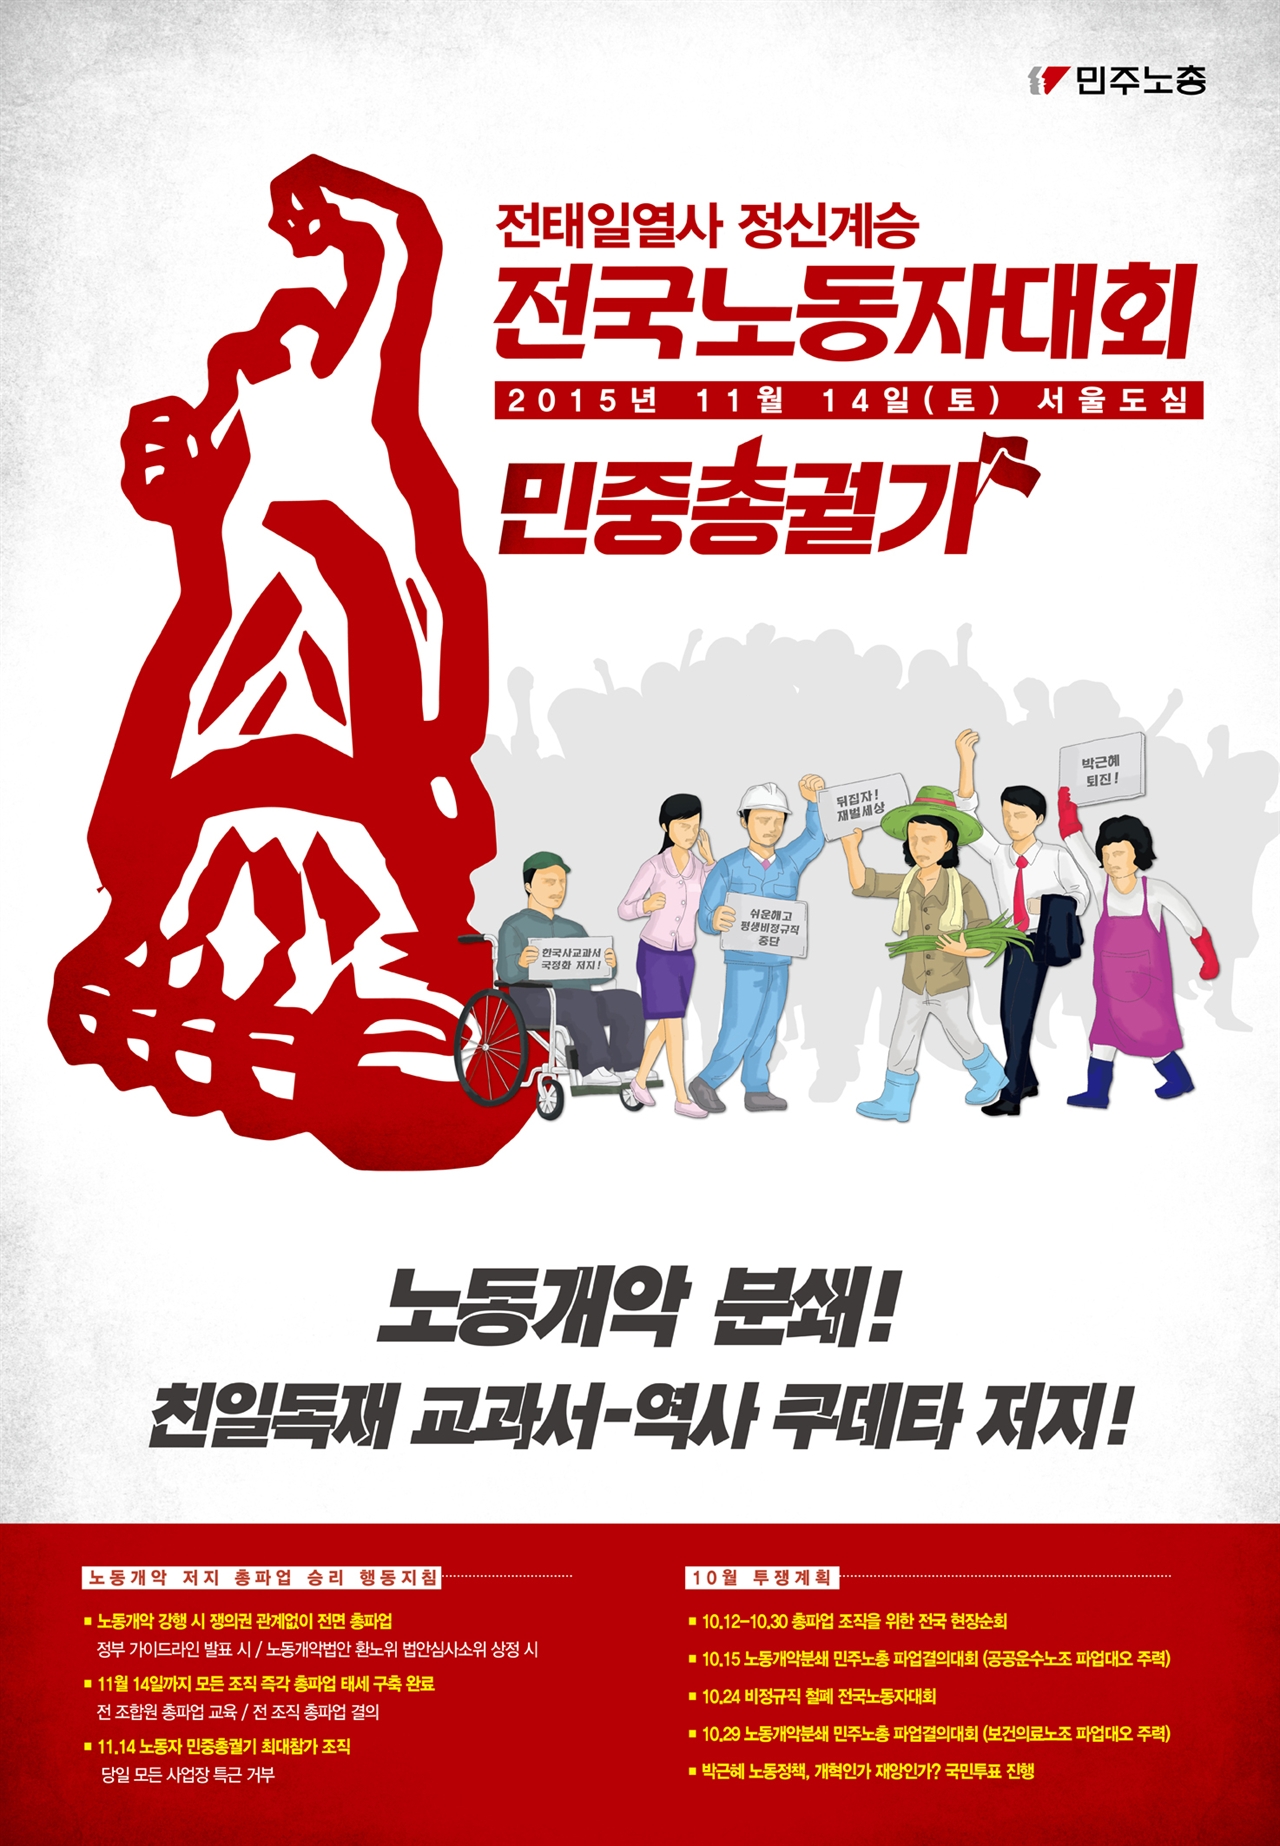 지난 11월 14일 열린 '민중총궐기 포스터'. '노동개악 분쇄'라는 표현보다 대중들에게 파고드는 문구는 정말 없었을까.